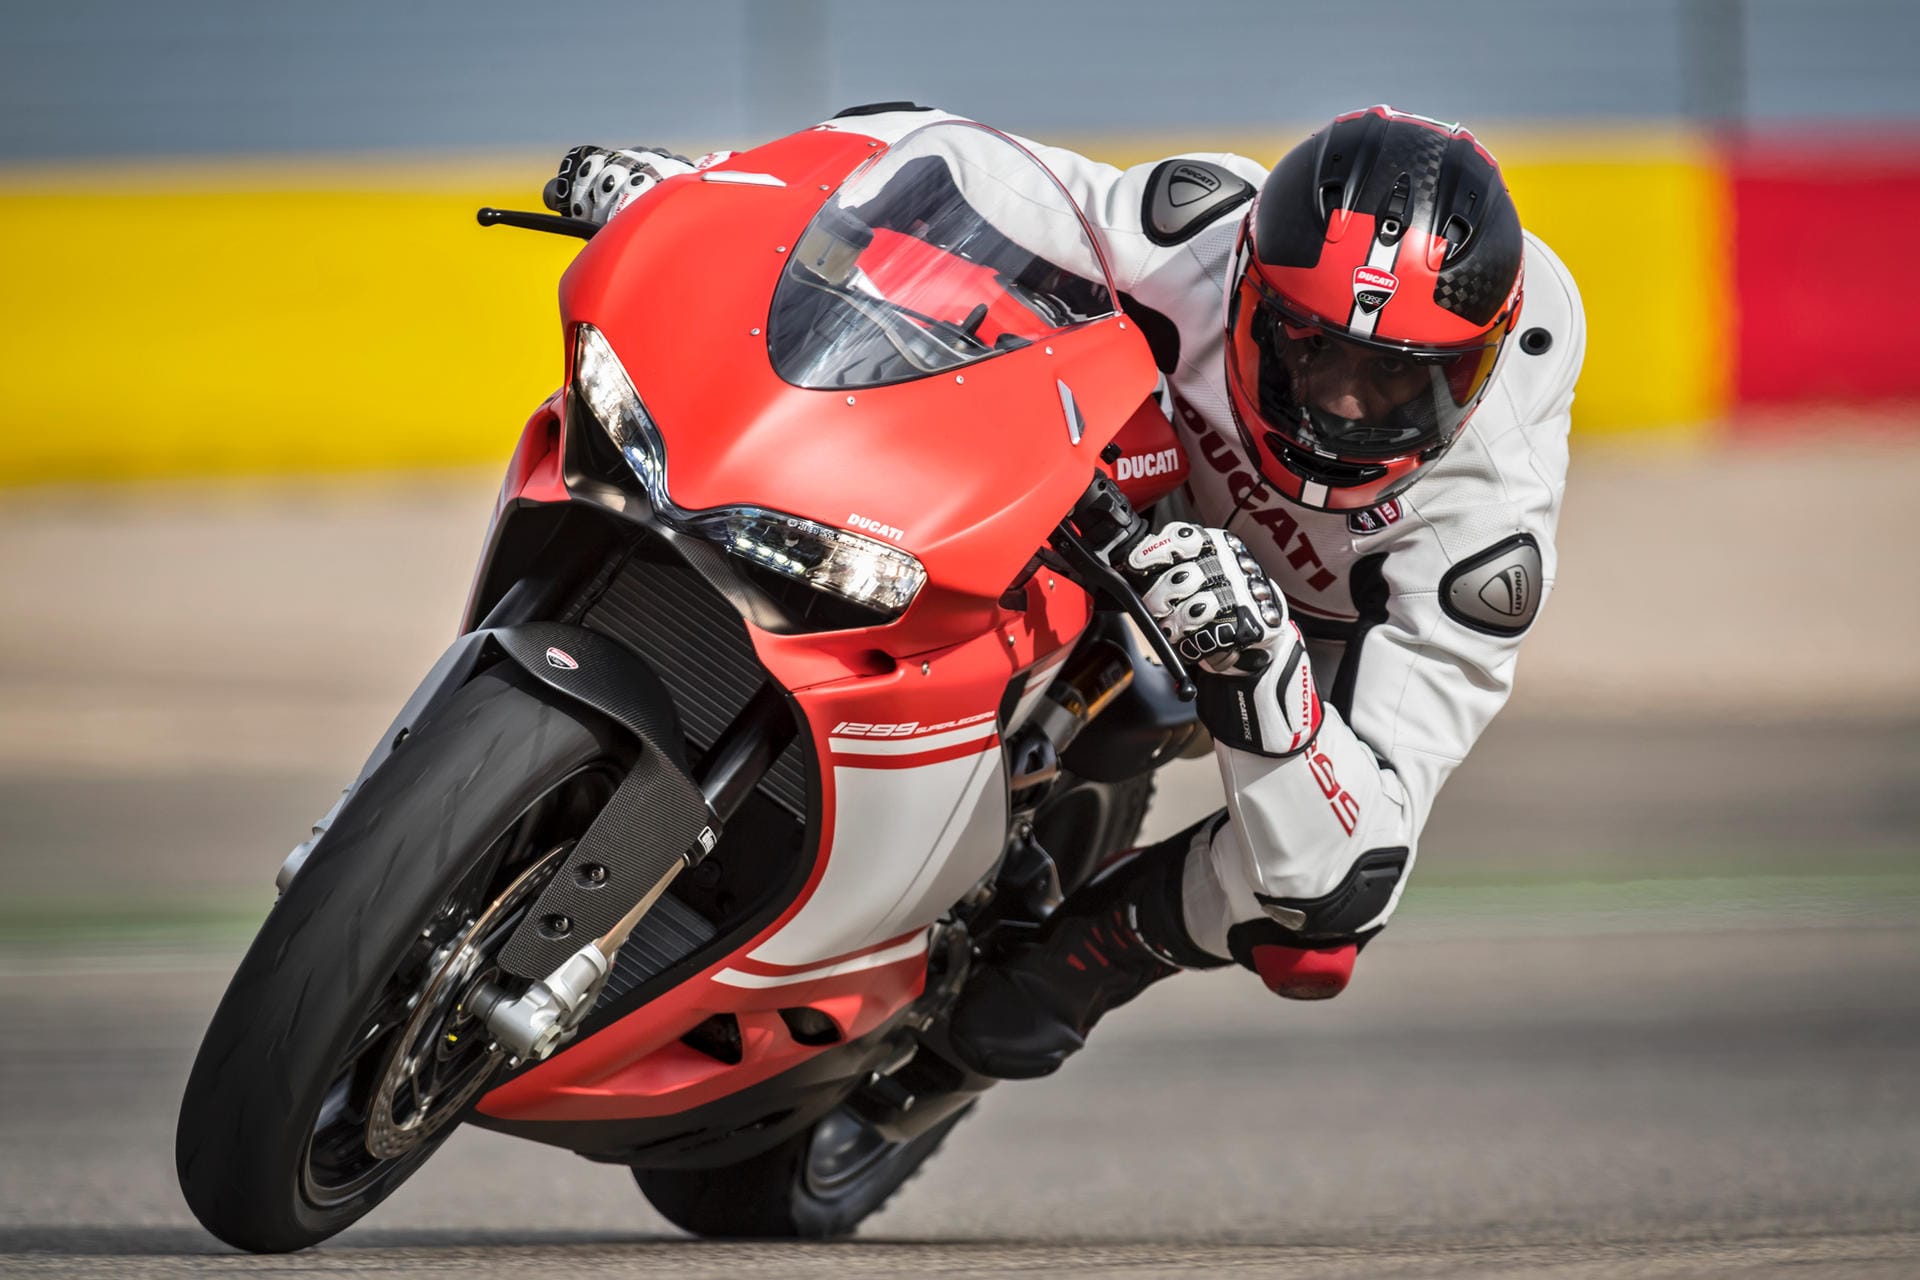 Bei den Supersportlern wie der Ducati 1299 Superleggera steht die Dynamik unverkennbar im Vordergrund.